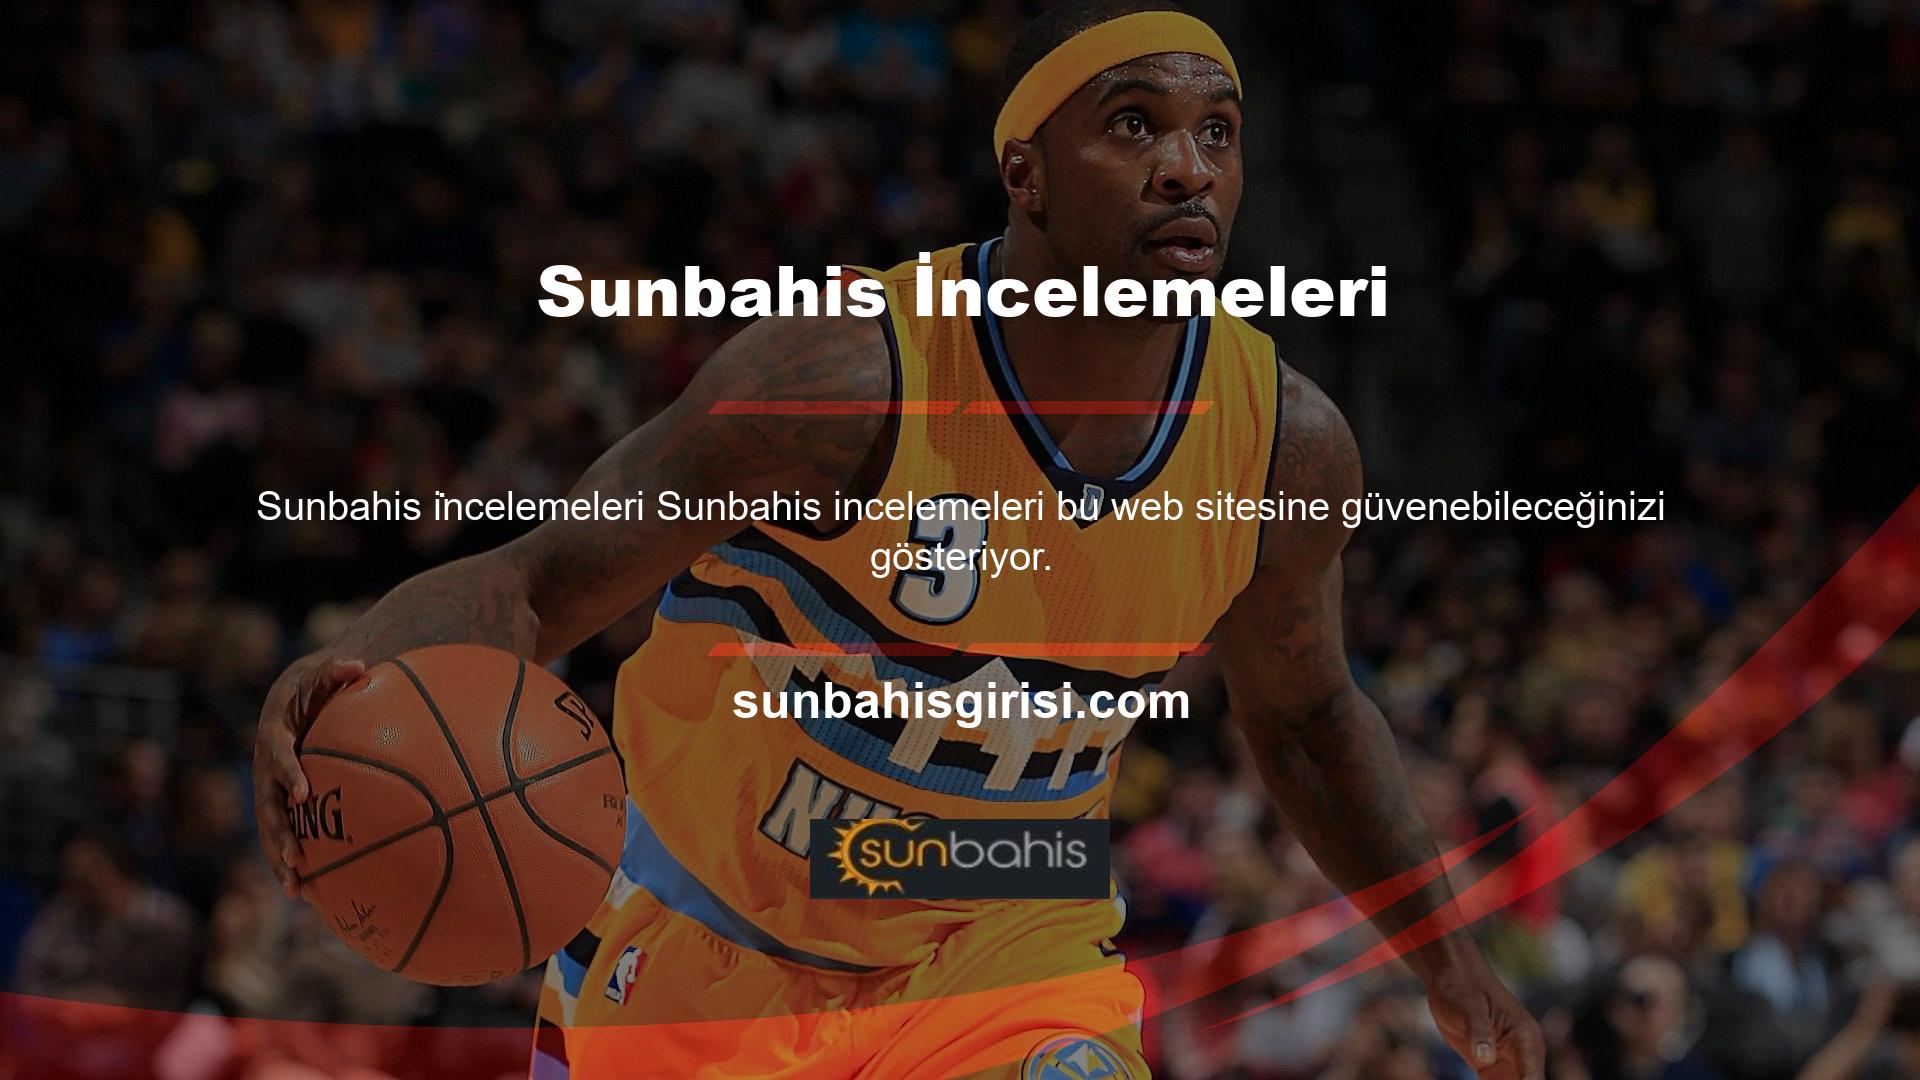 Sunbahis web sitesi sürekli olarak izlenmektedir ve hiçbir sahtekarlığa veya kötüye kullanıma izin verilmemektedir